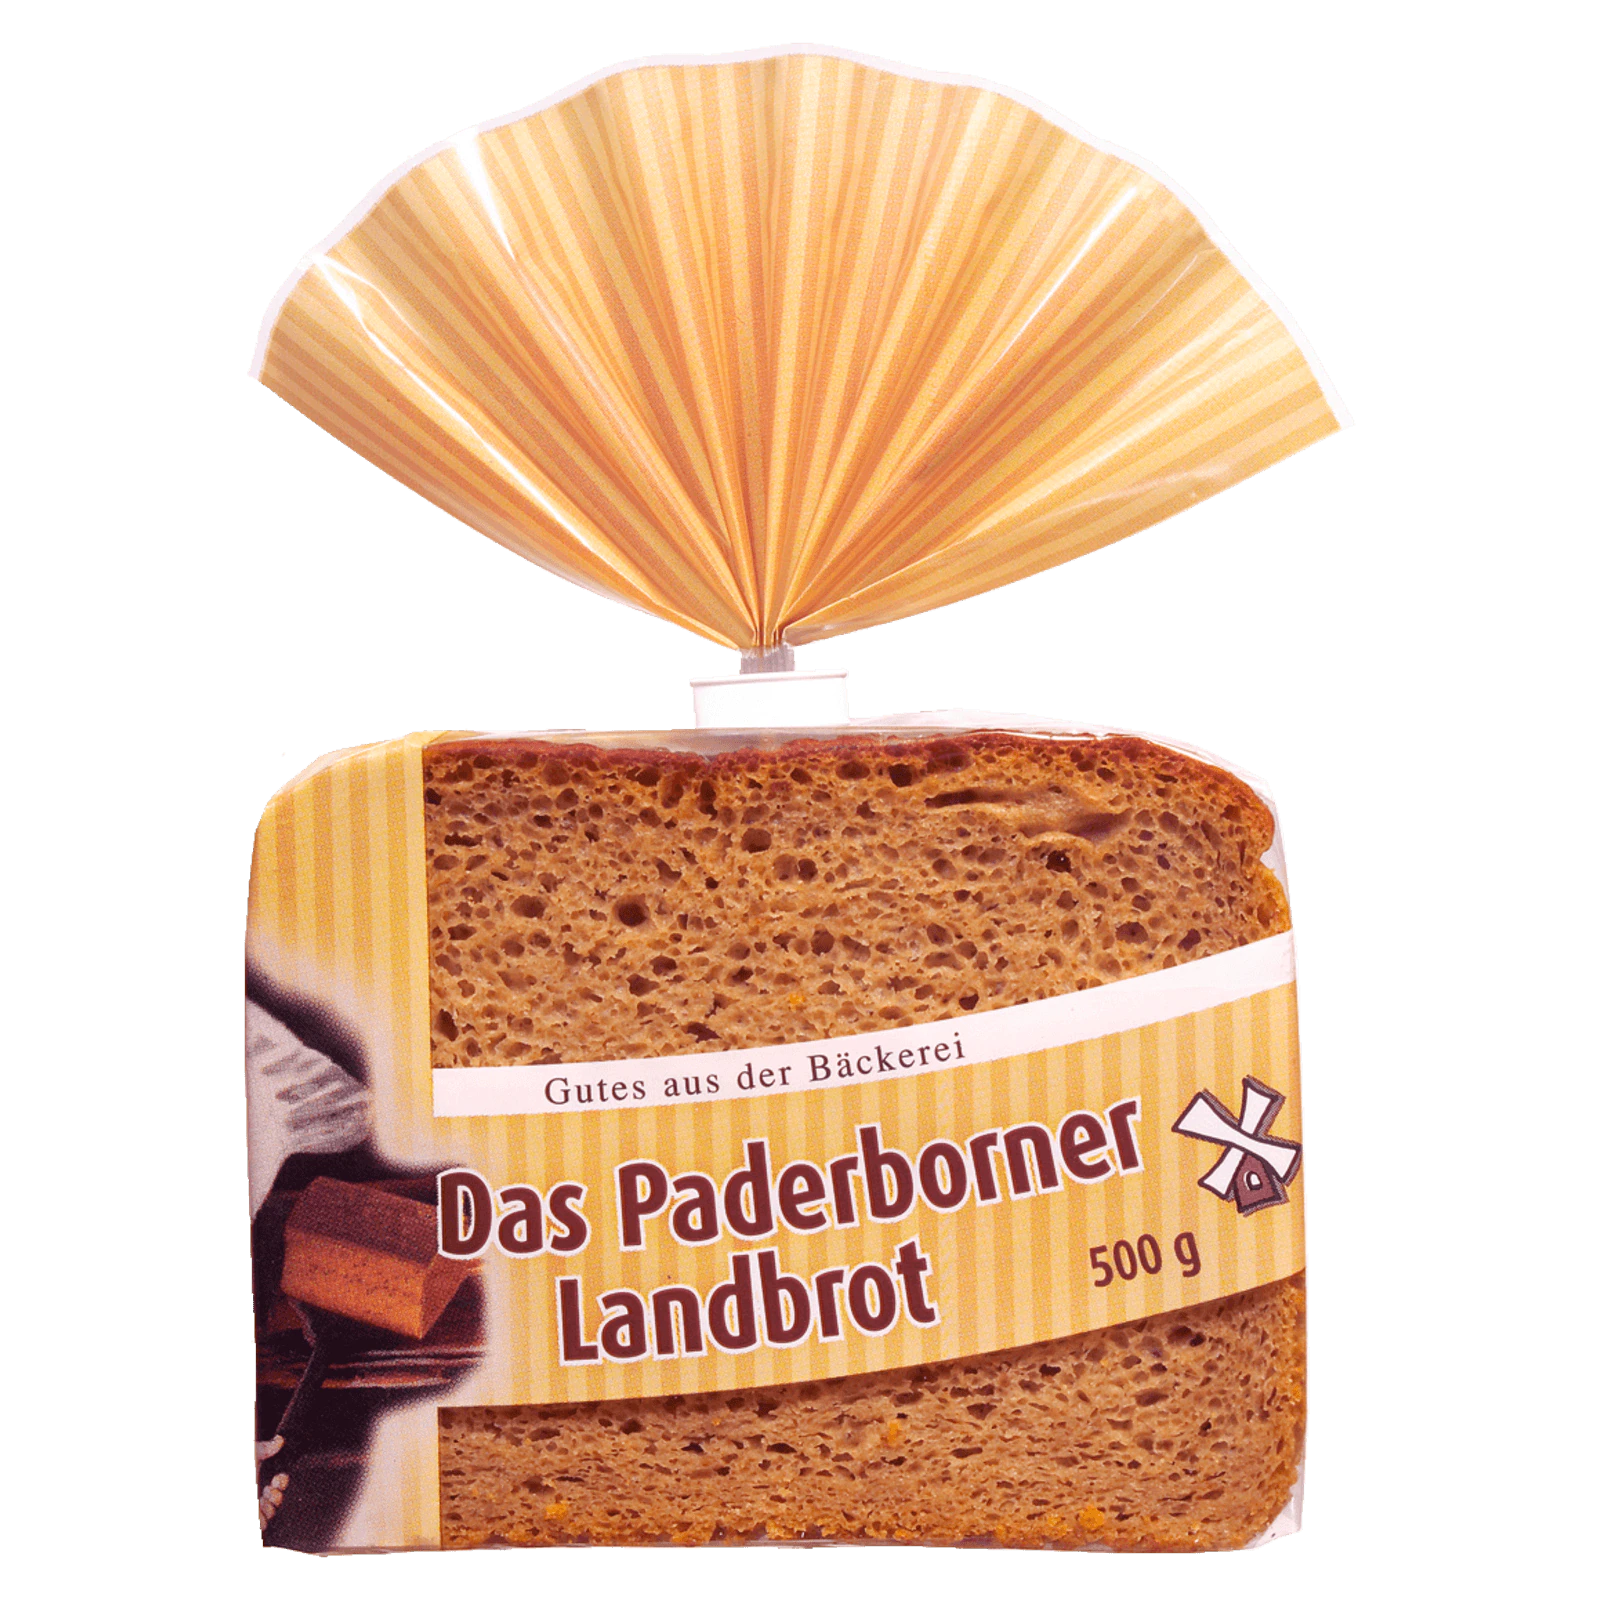 Gab Paderborner Landbrot geschnitten 500g bei REWE online bestellen!